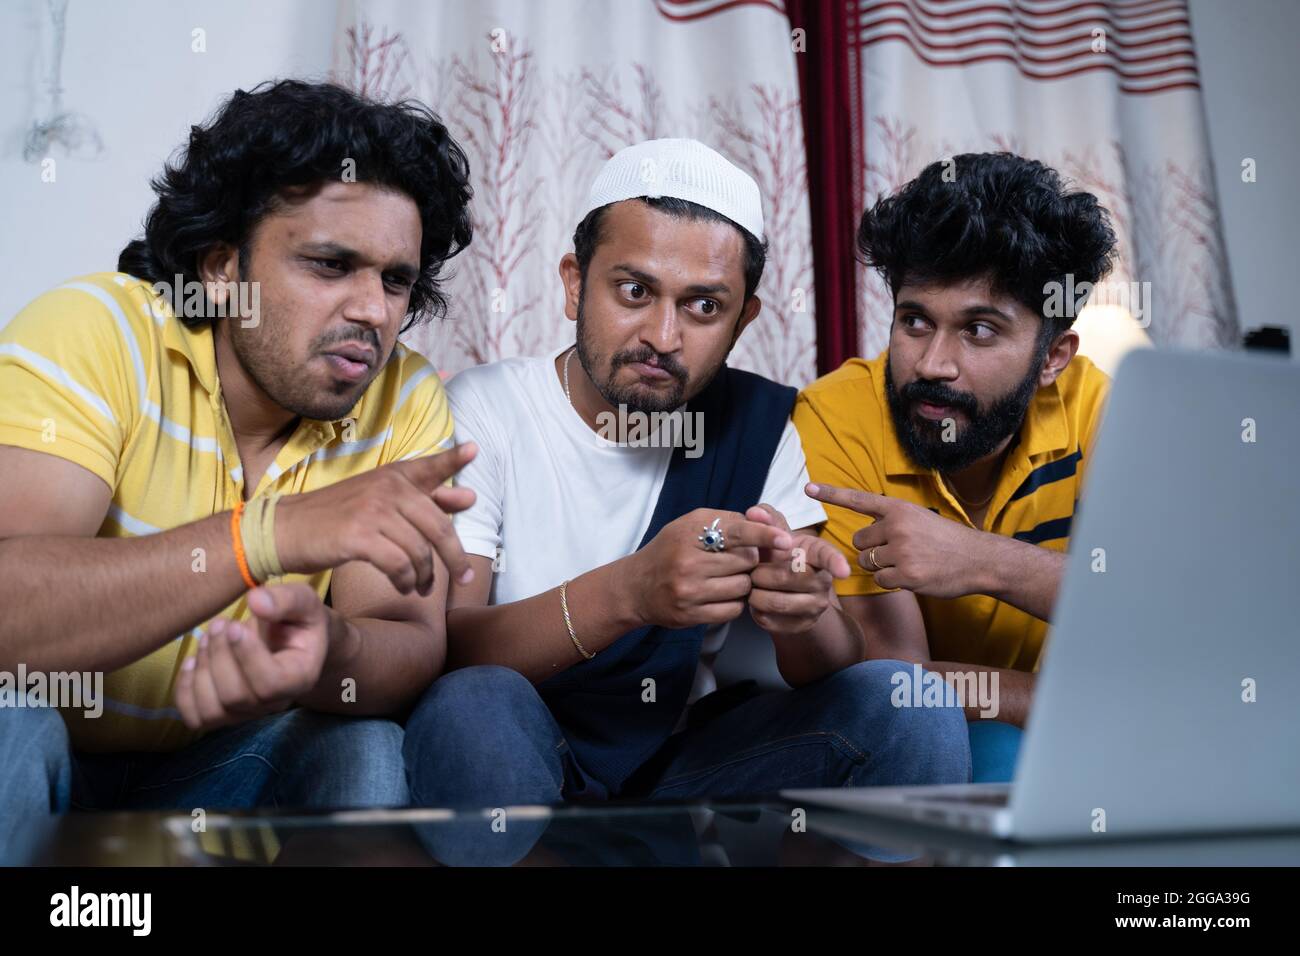 Eine Gruppe multiethnischer indischer Freunde, die mit Diskussionen beschäftigt sind, während sie sich Live-Filme, Sportspiele oder politische Nachrichten am Laptop ansehen Stockfoto